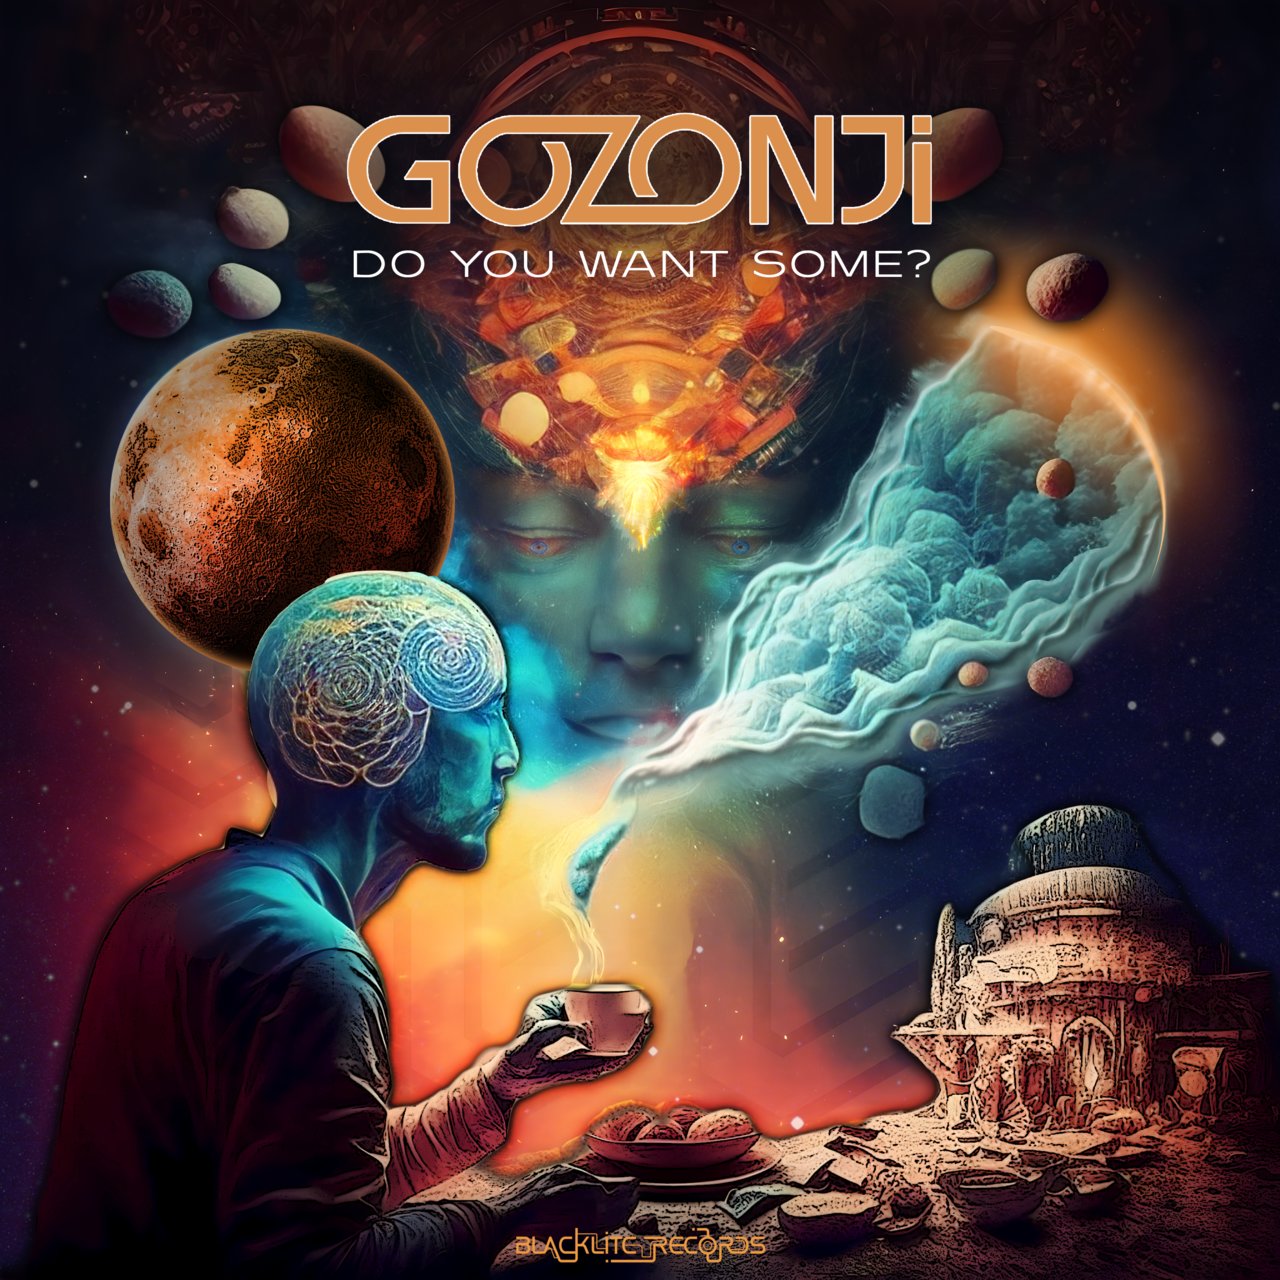 Do you want some? - Gozonji